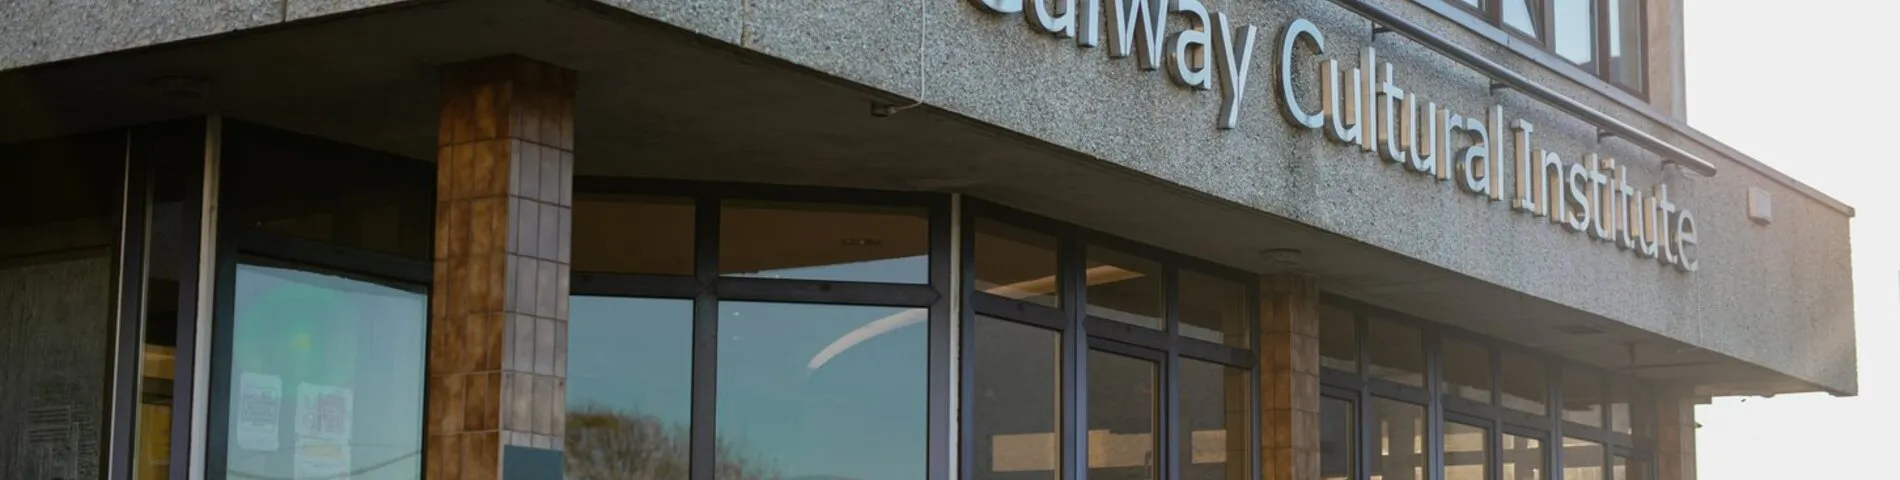 Galway Cultural Institute Bild 1